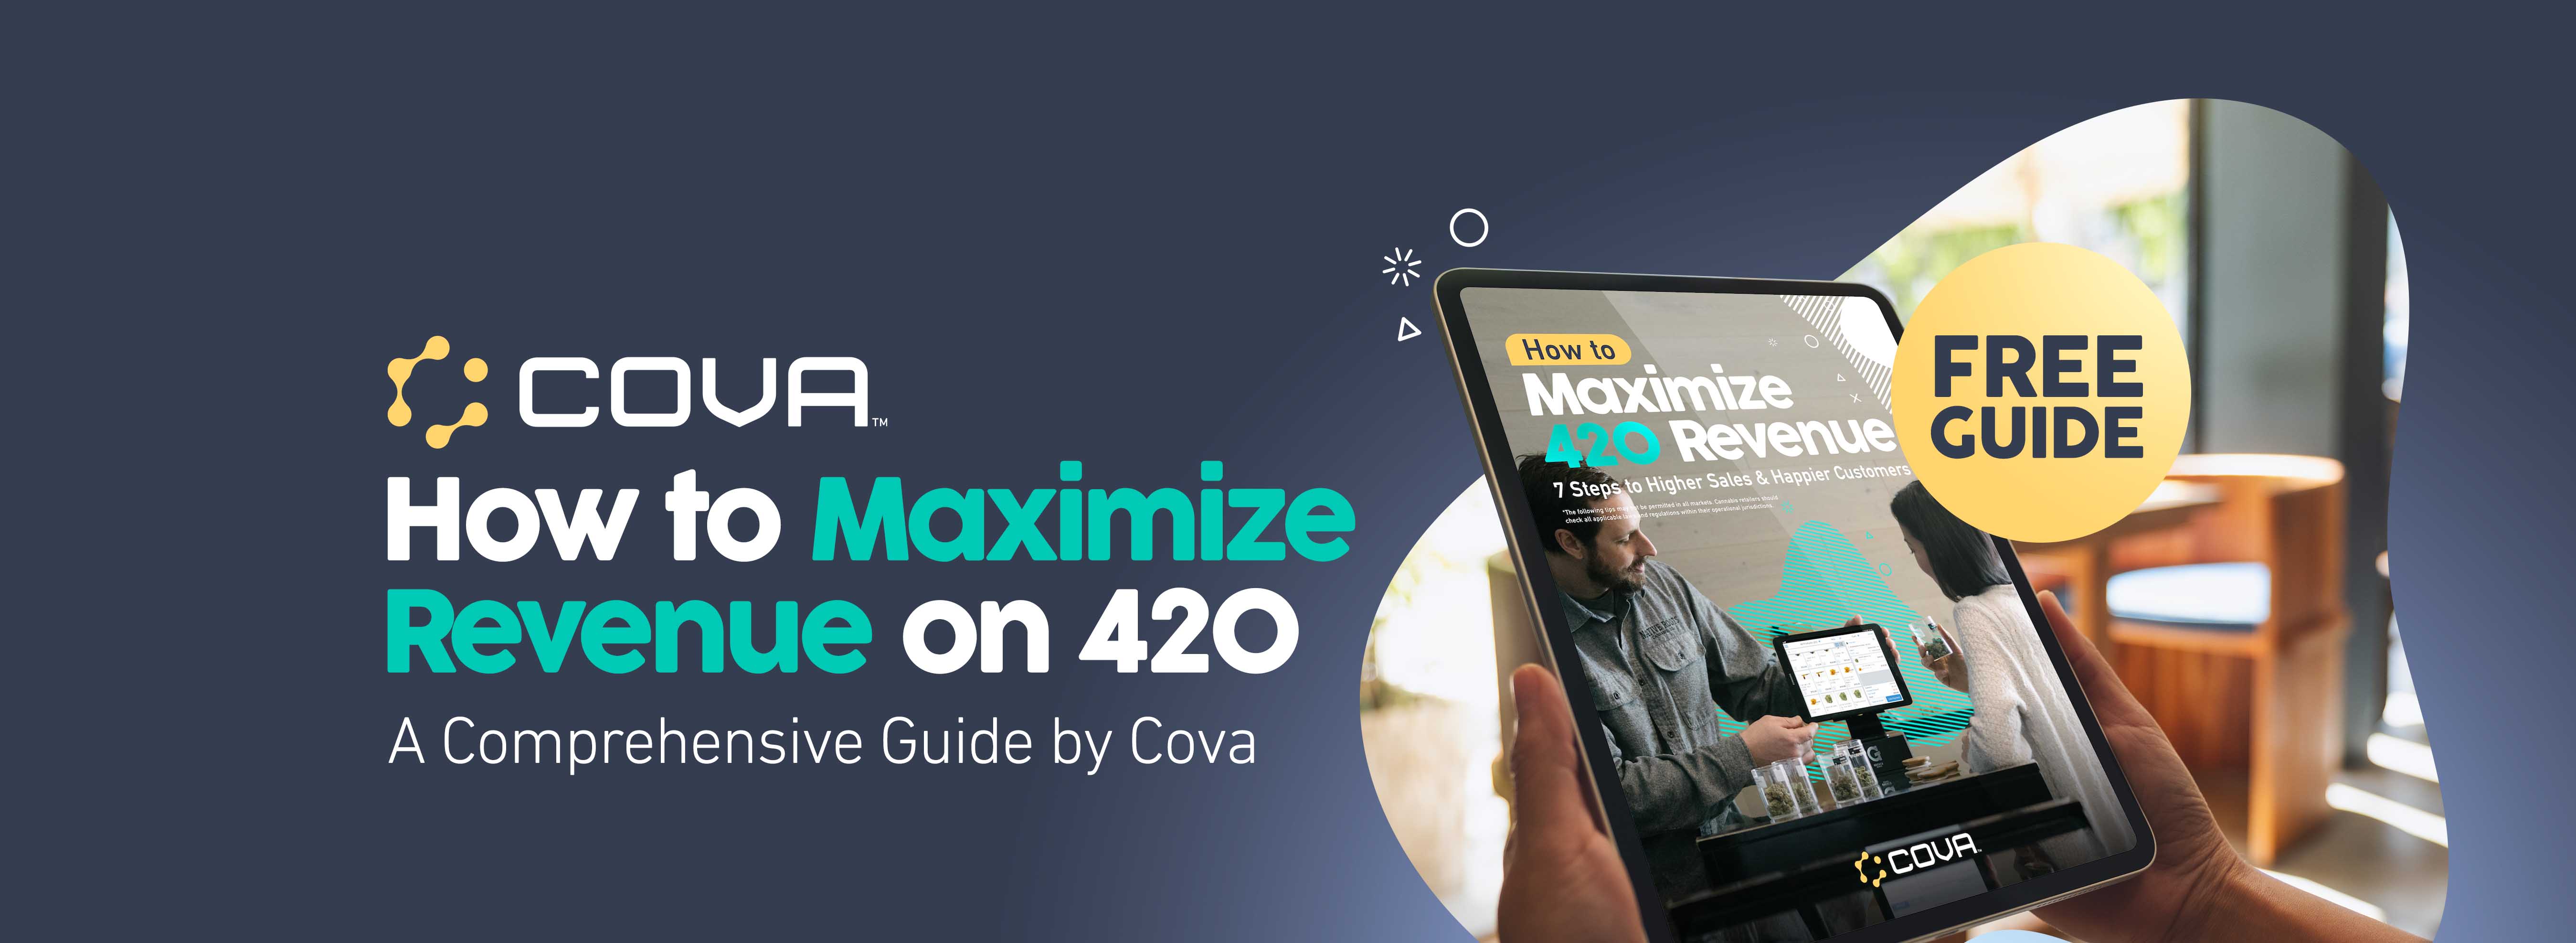 Cova-Maximize-Revenue-420_Landing-Page-Desktop